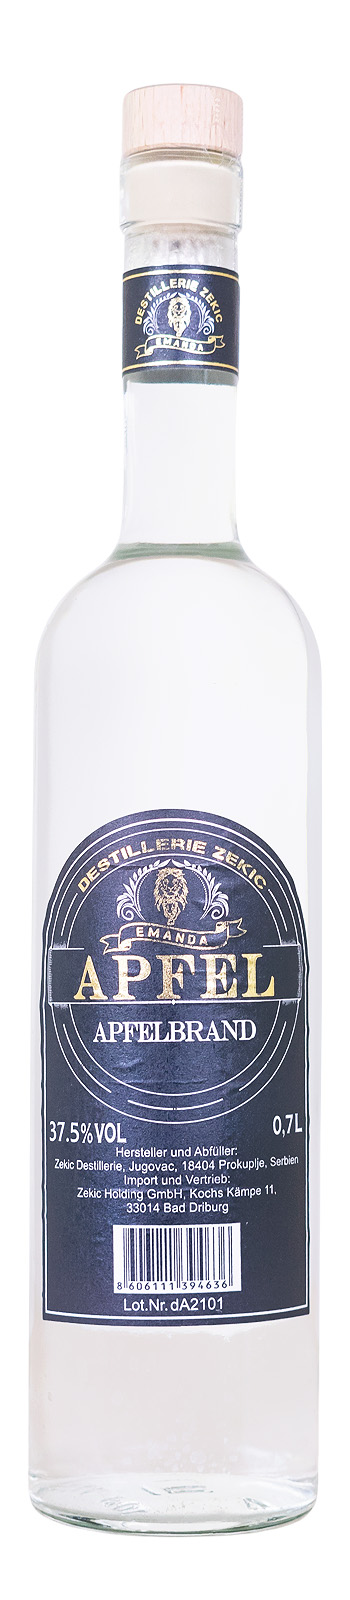 Emanda Apfelbrand Jabukovaca Cutura-Flasche - 0,7L 37,5% vol